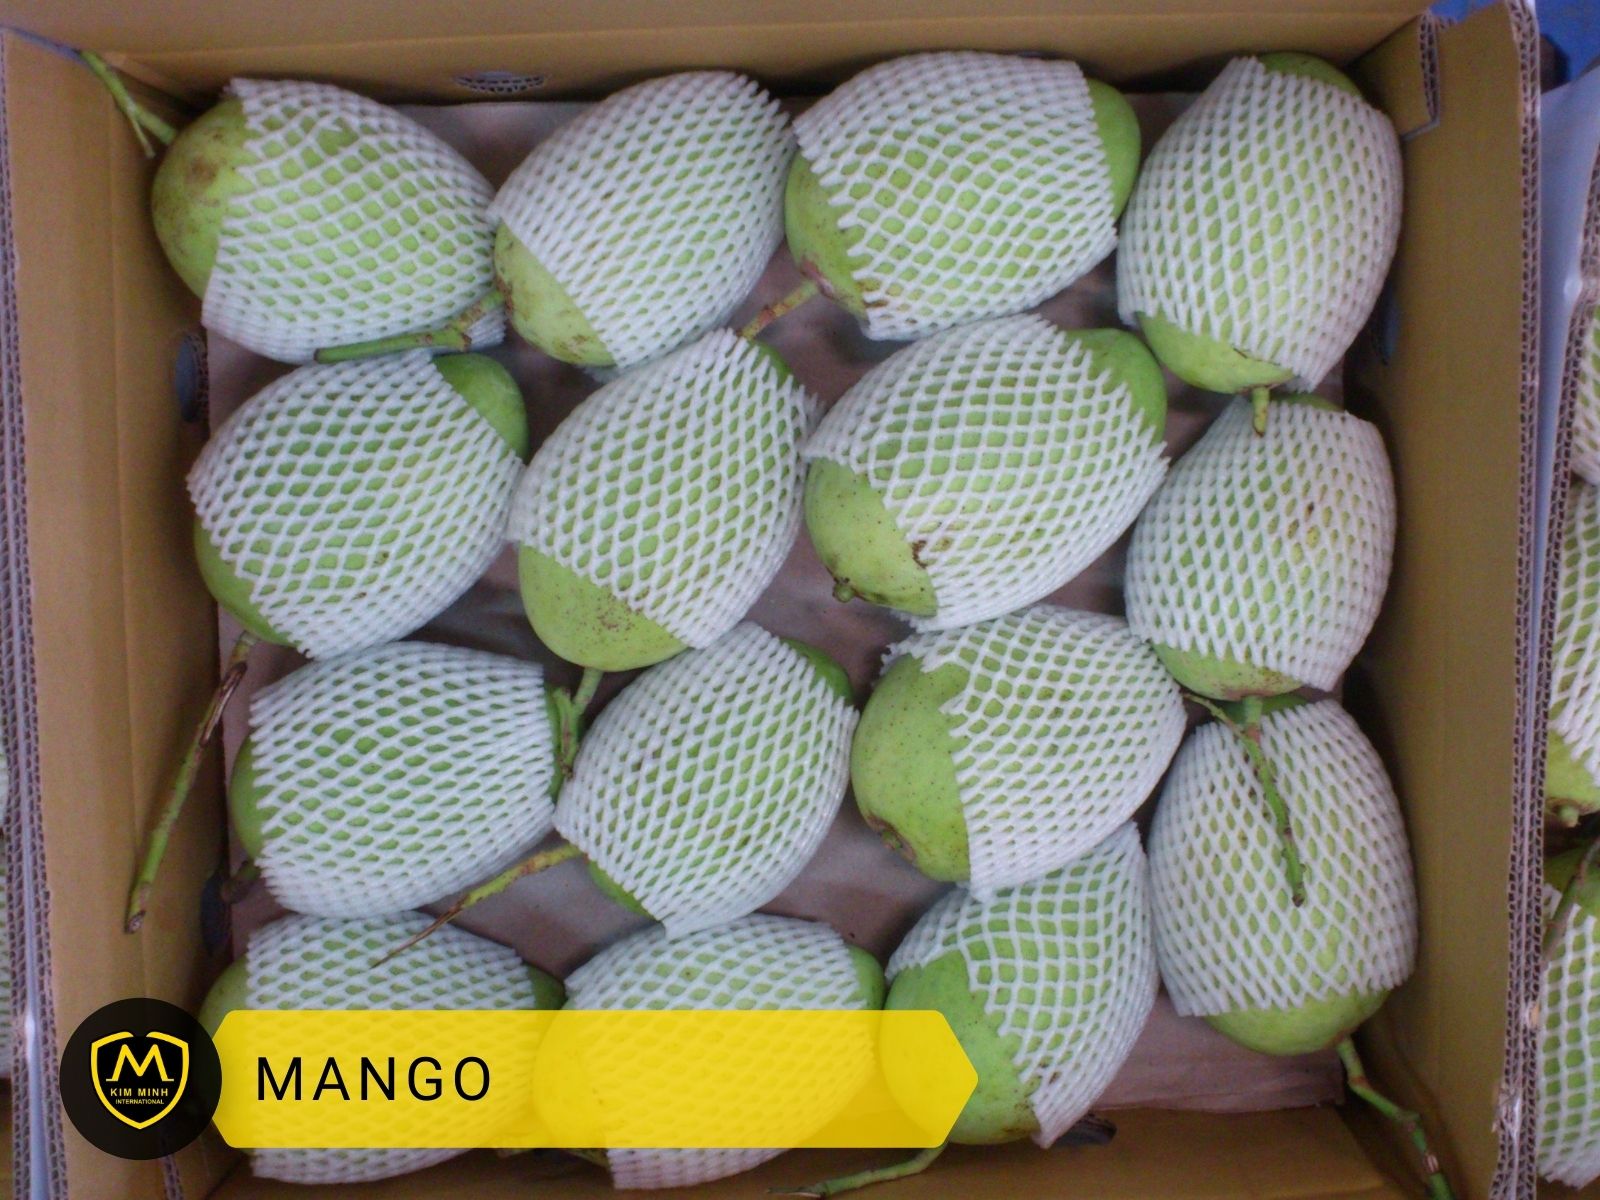 Packing & Loading Mango 02